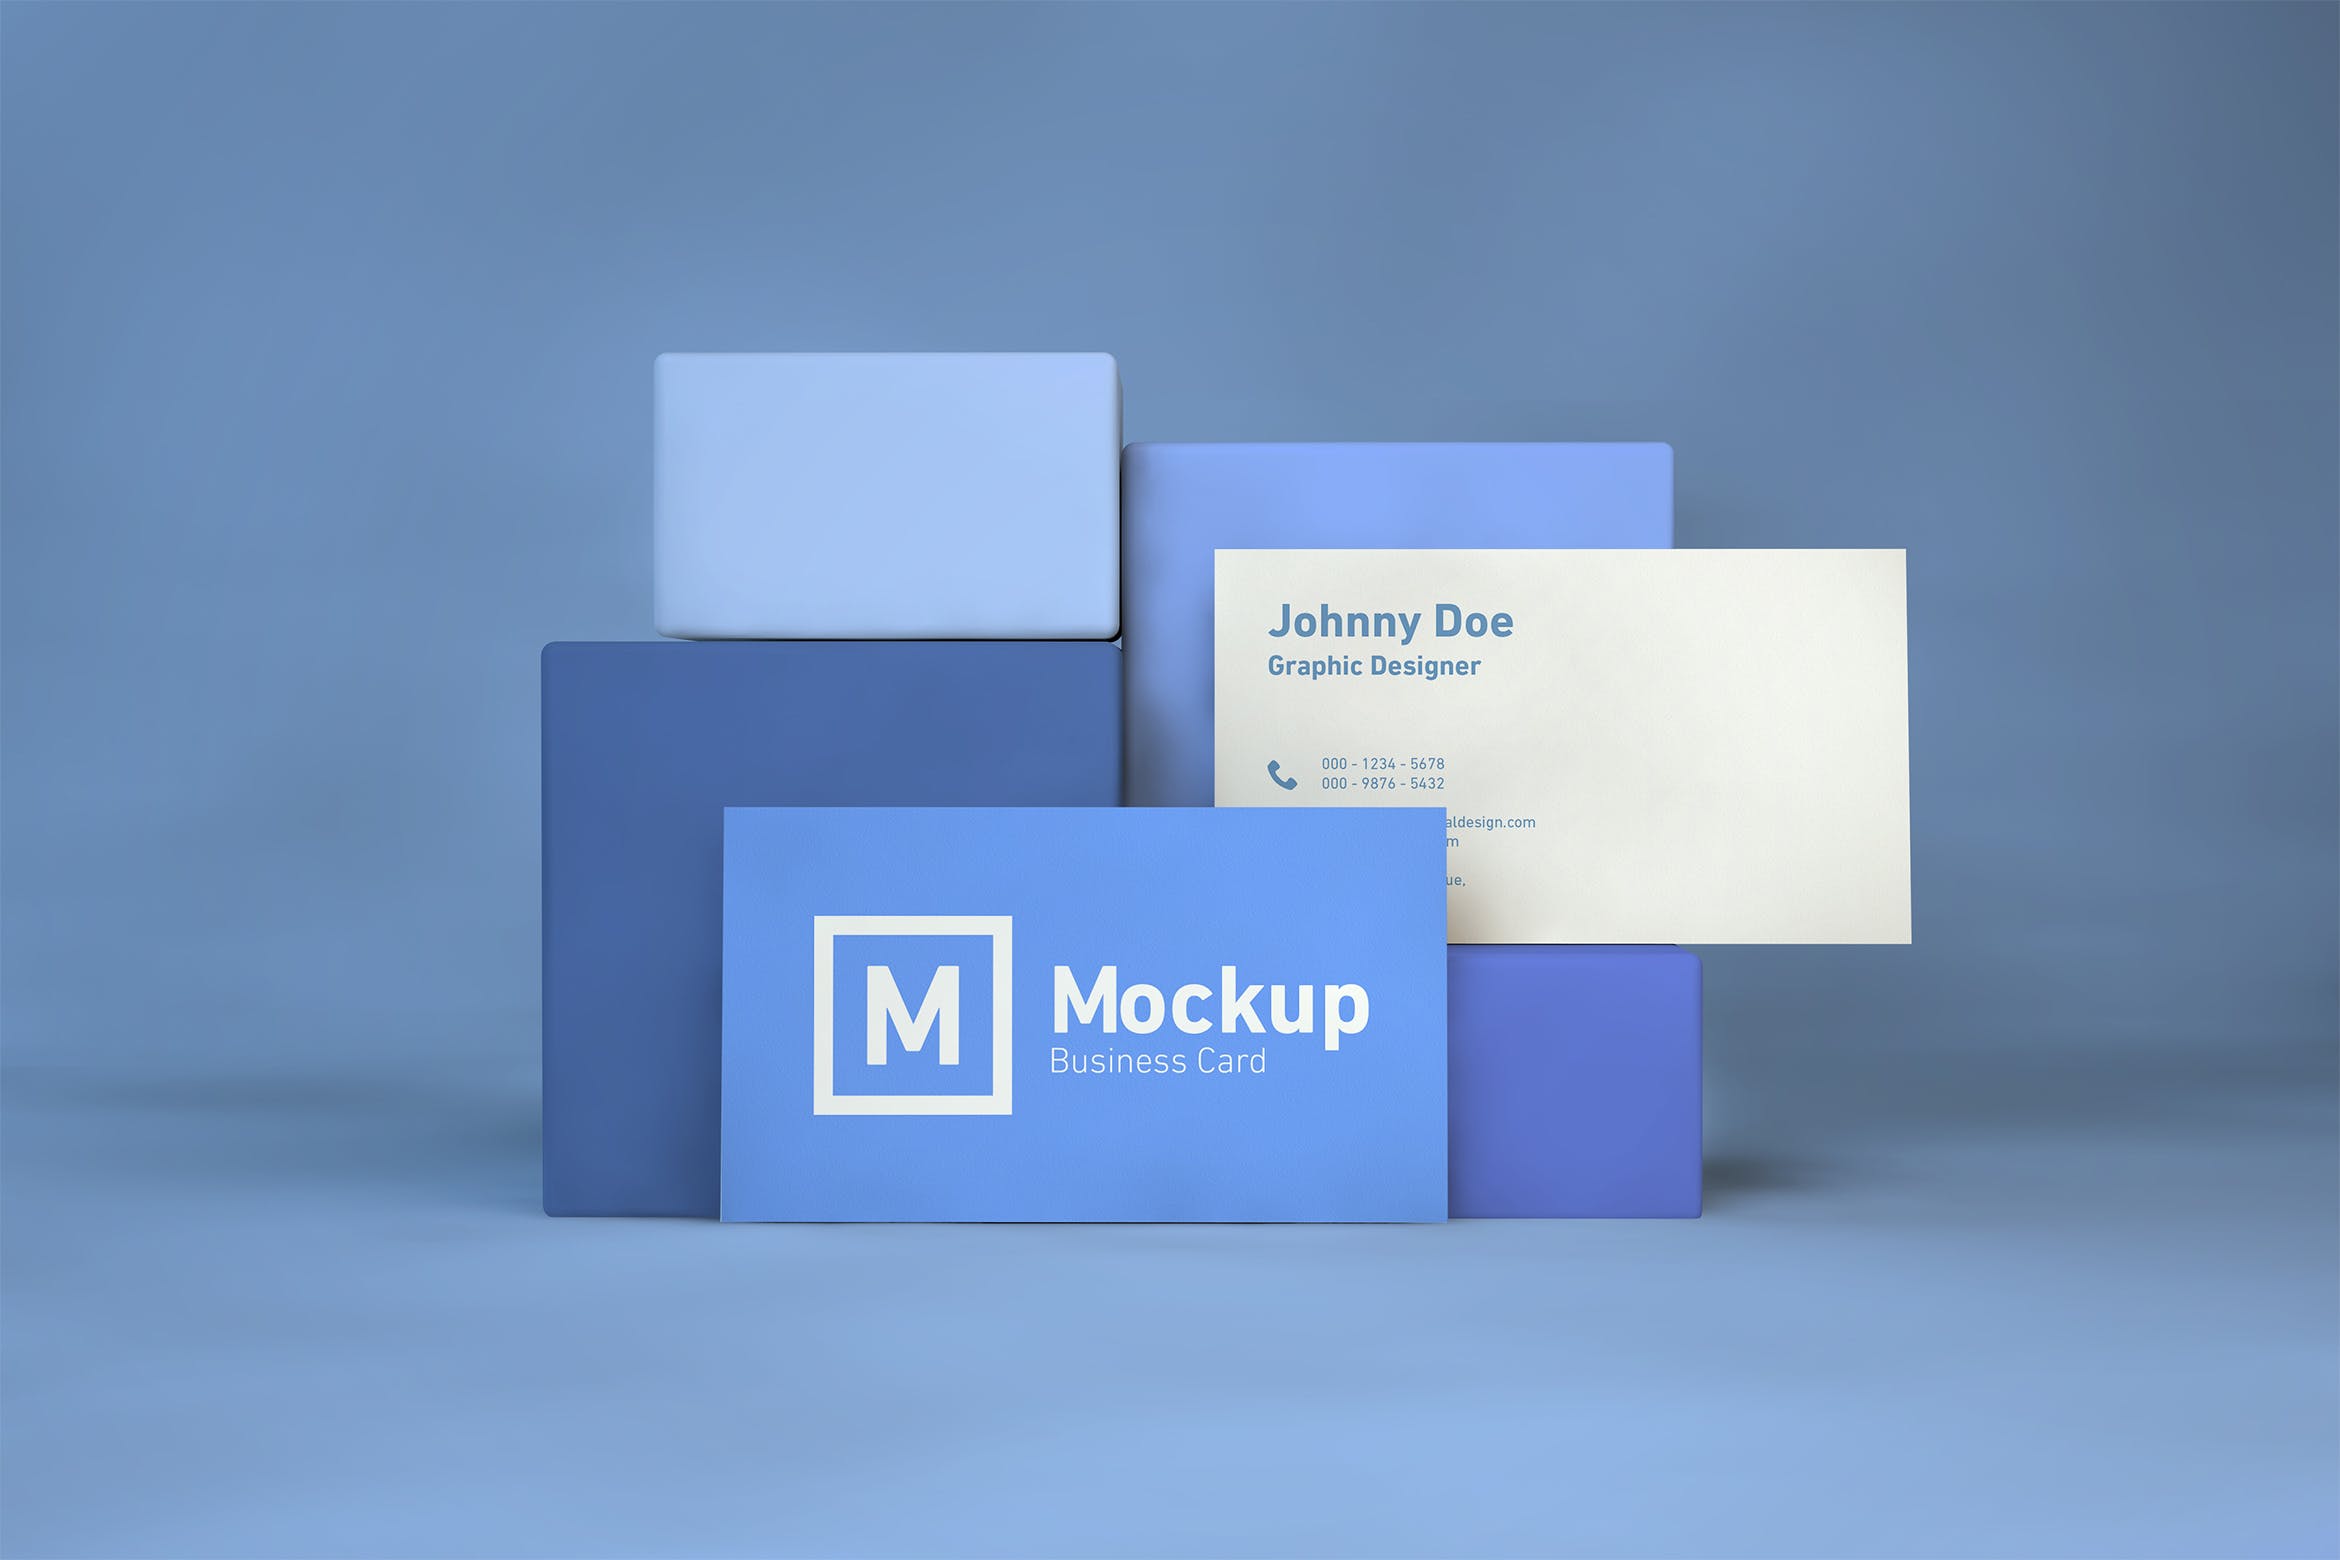 企业名片双面设计效果展示蚂蚁素材精选 Business Card On Blocks Mockup插图